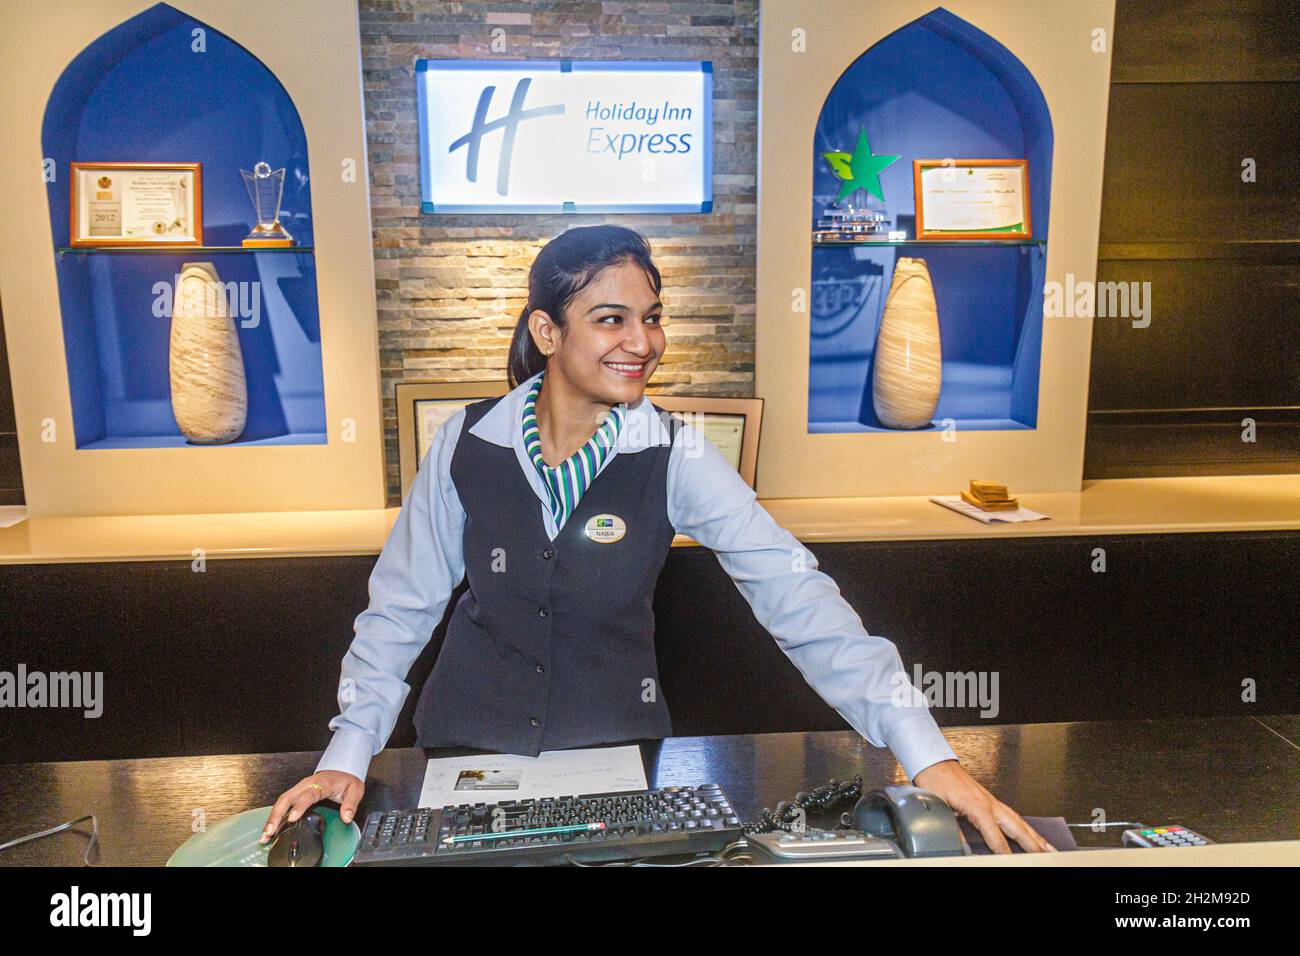 Dubai eau, Garhoud, Holiday Inn Express hall de l'hôtel, femme musulmane réception, enregistrement à la réception réservations personnel souriant employé à l'intérieur Banque D'Images